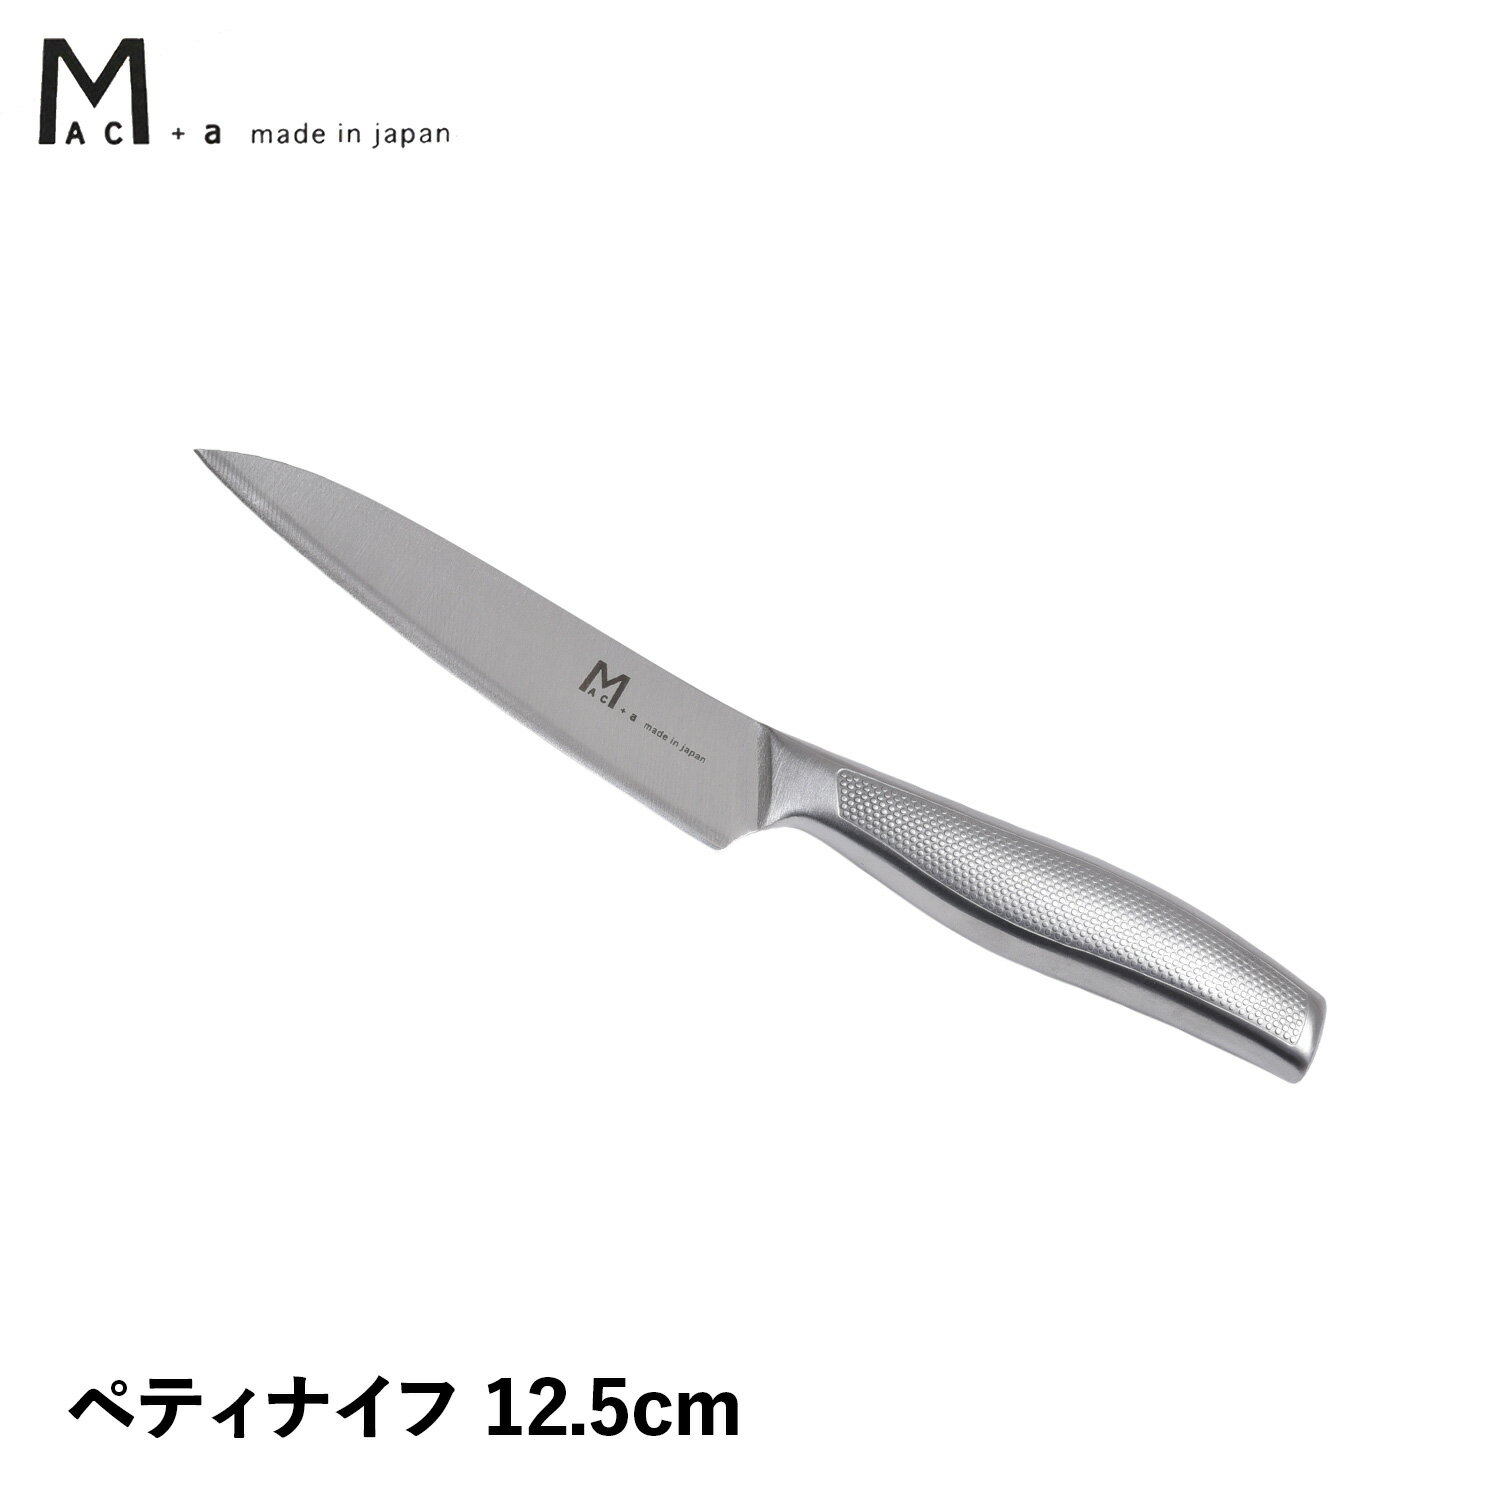 MAC＋a PETTY マックプラスエー 包丁 ペティナイフ 刃渡り 12.5cm ペティーナイフ オールステンレス 一体型 日本製 MA-125